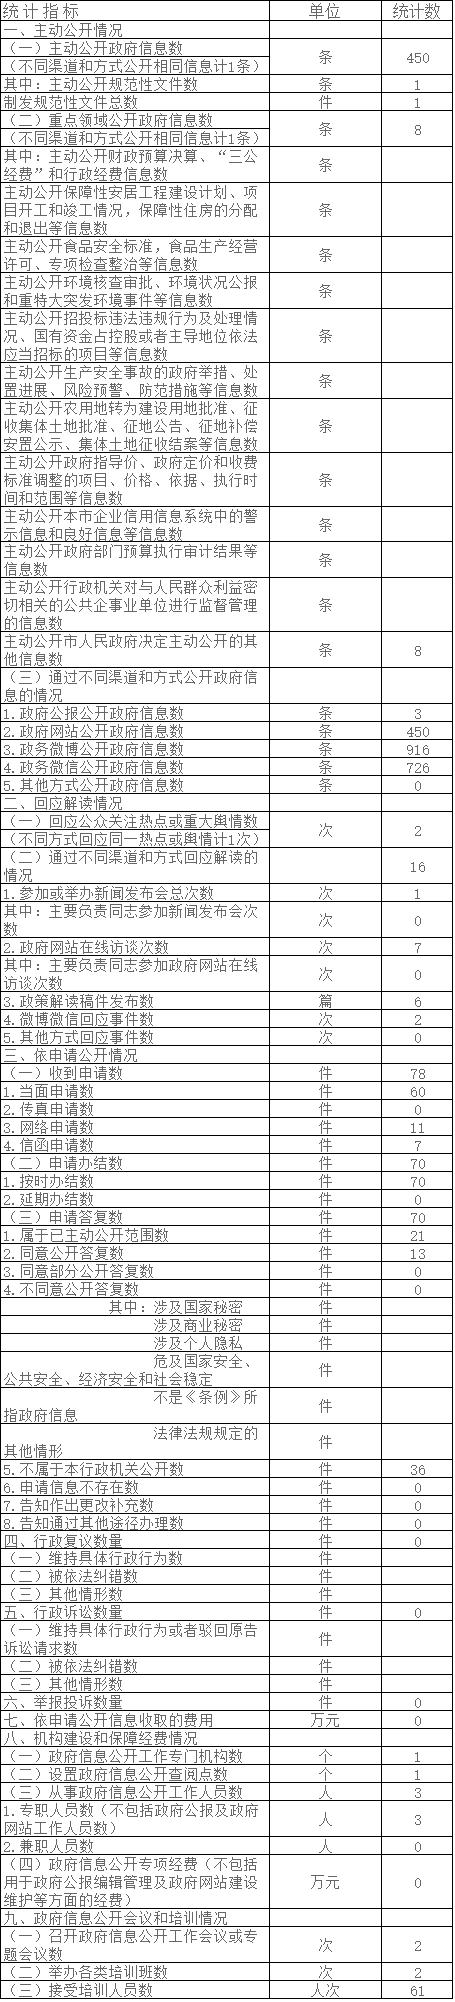 北京市农村工作委员会政府信息公开情况统计表(2017年度)